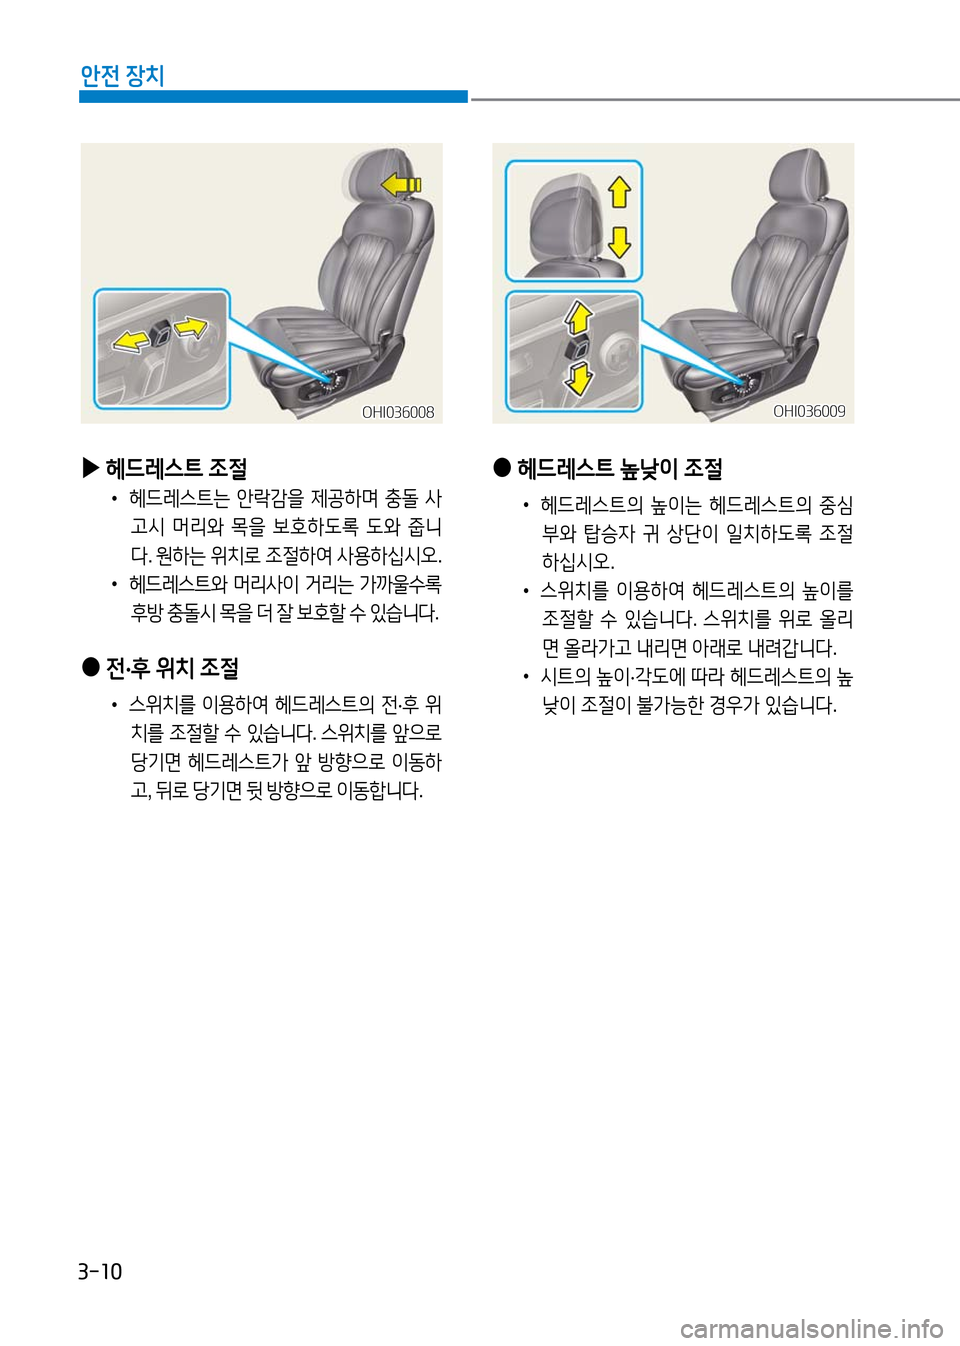 Hyundai Genesis 2016  EQ900 HI - 사용 설명서 (in Korean) 3-10
안전 장치
 ●전·후 위치 조절 
 •스위치를 이용하여 헤드레스트의 전·후 위
치를 조절할 수 있습니다. 스위치를 앞으로 
당기면 헤드레스트가 앞